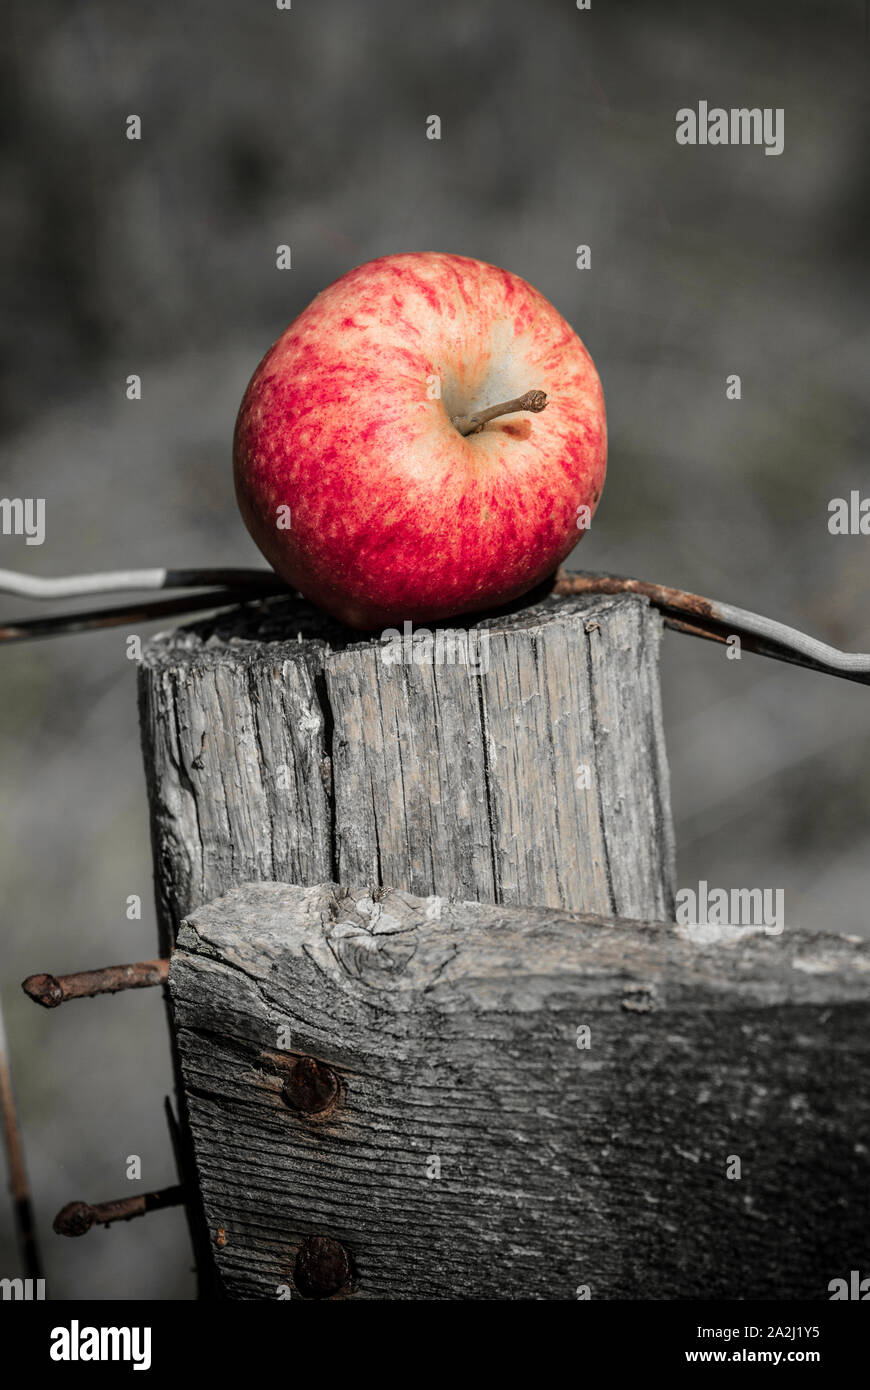 Ein windschlag Apple, der von einem privaten Obstgarten im September gesammelt wurden, platziert auf einem alten fencepost. Entsättigung Foto durch selektive Farbkorrektur. Stockfoto